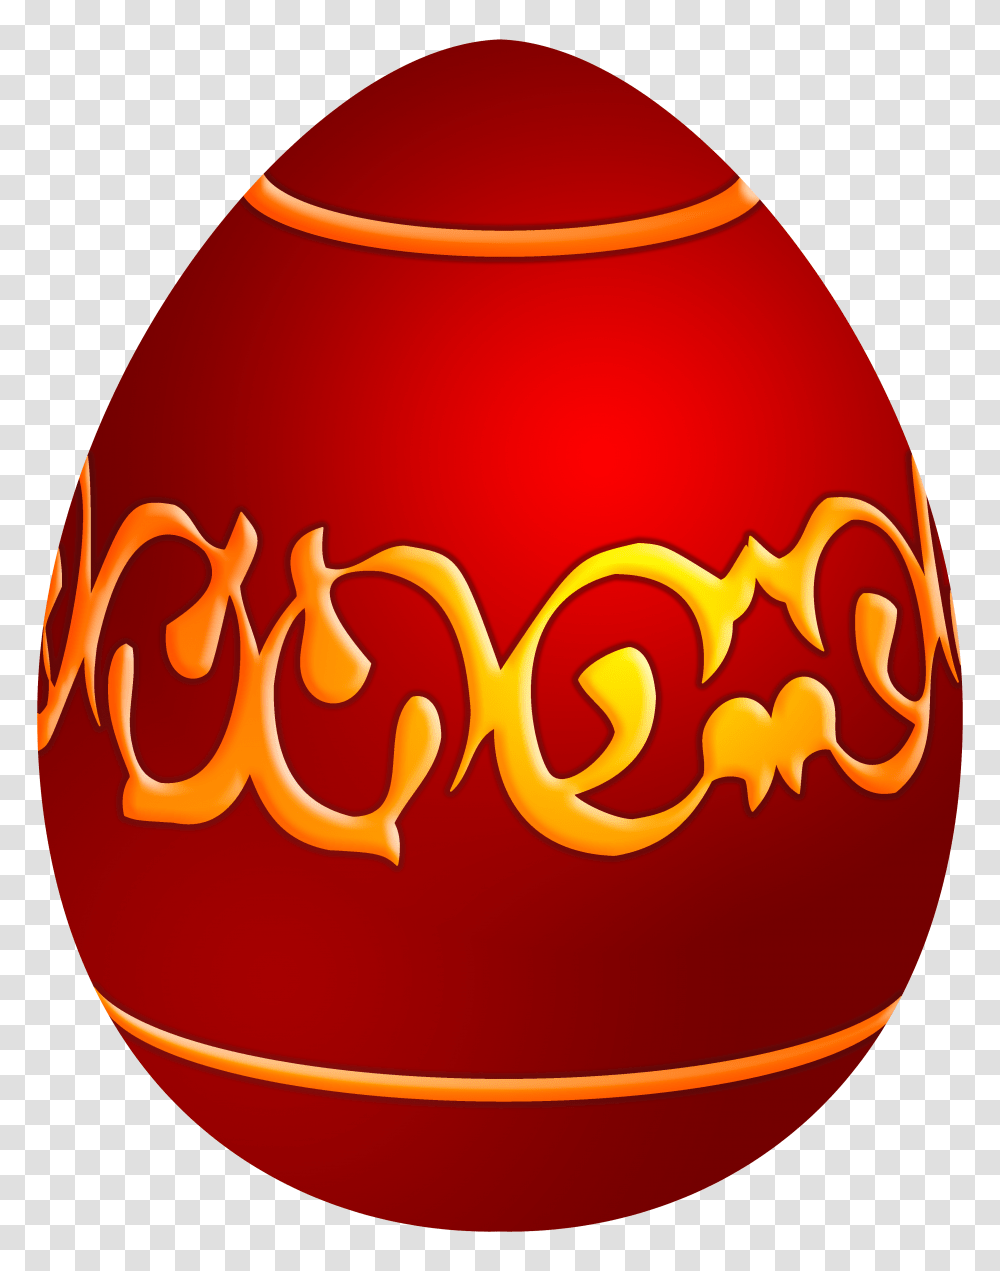 Easter Decorative Red Egg Clip Art, Food, Easter Egg, Ketchup, Label Transparent Png